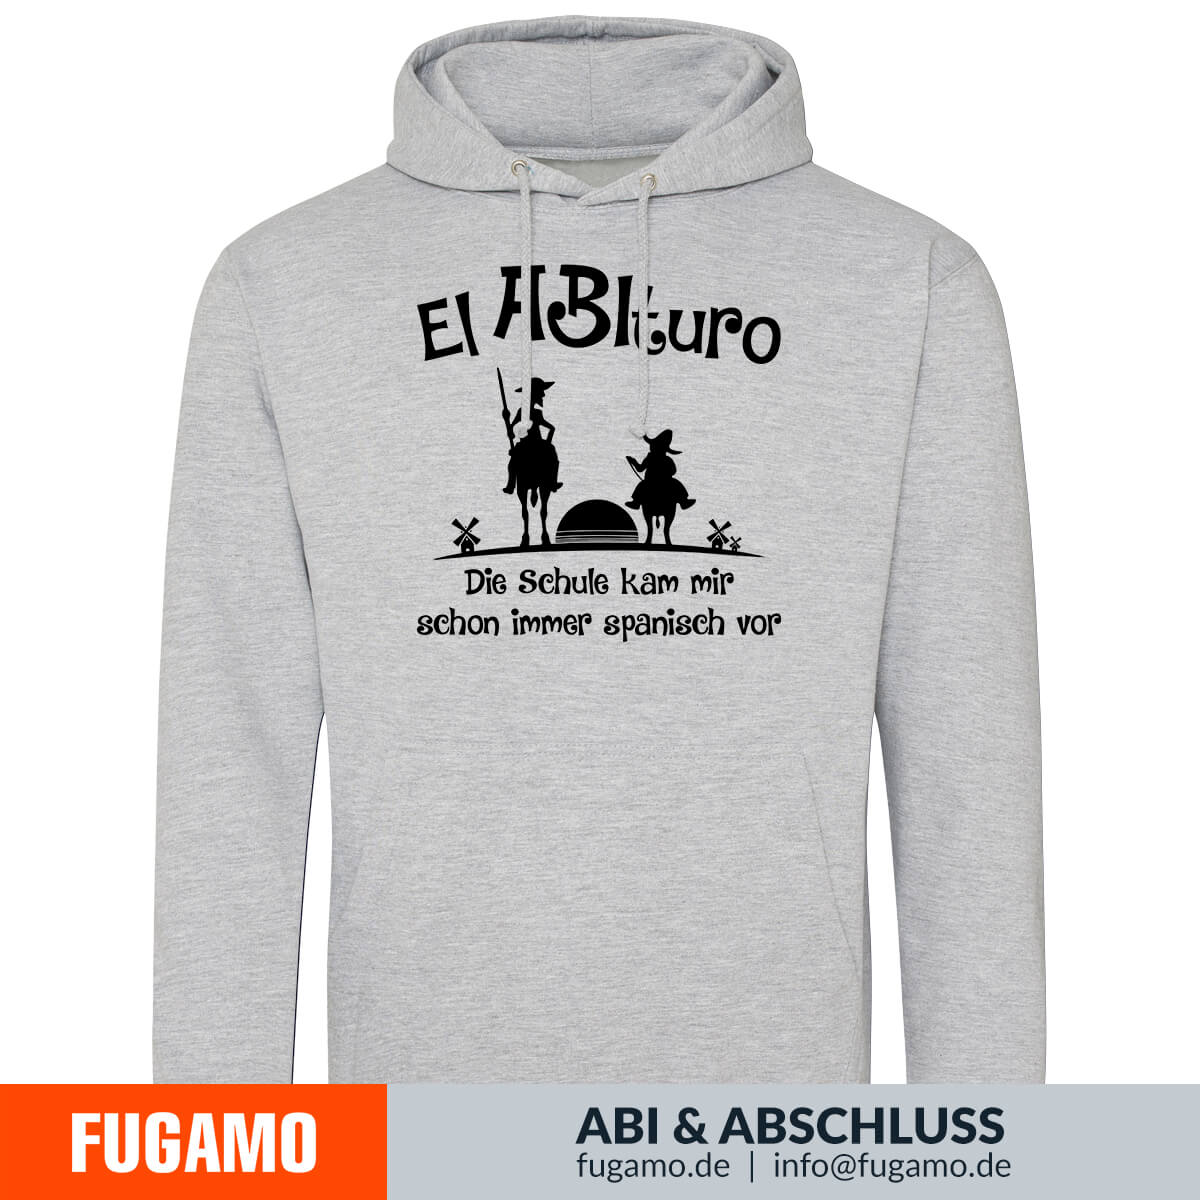 El ABIturo - 01 - Die Schule kam mir schon immer spanisch vor